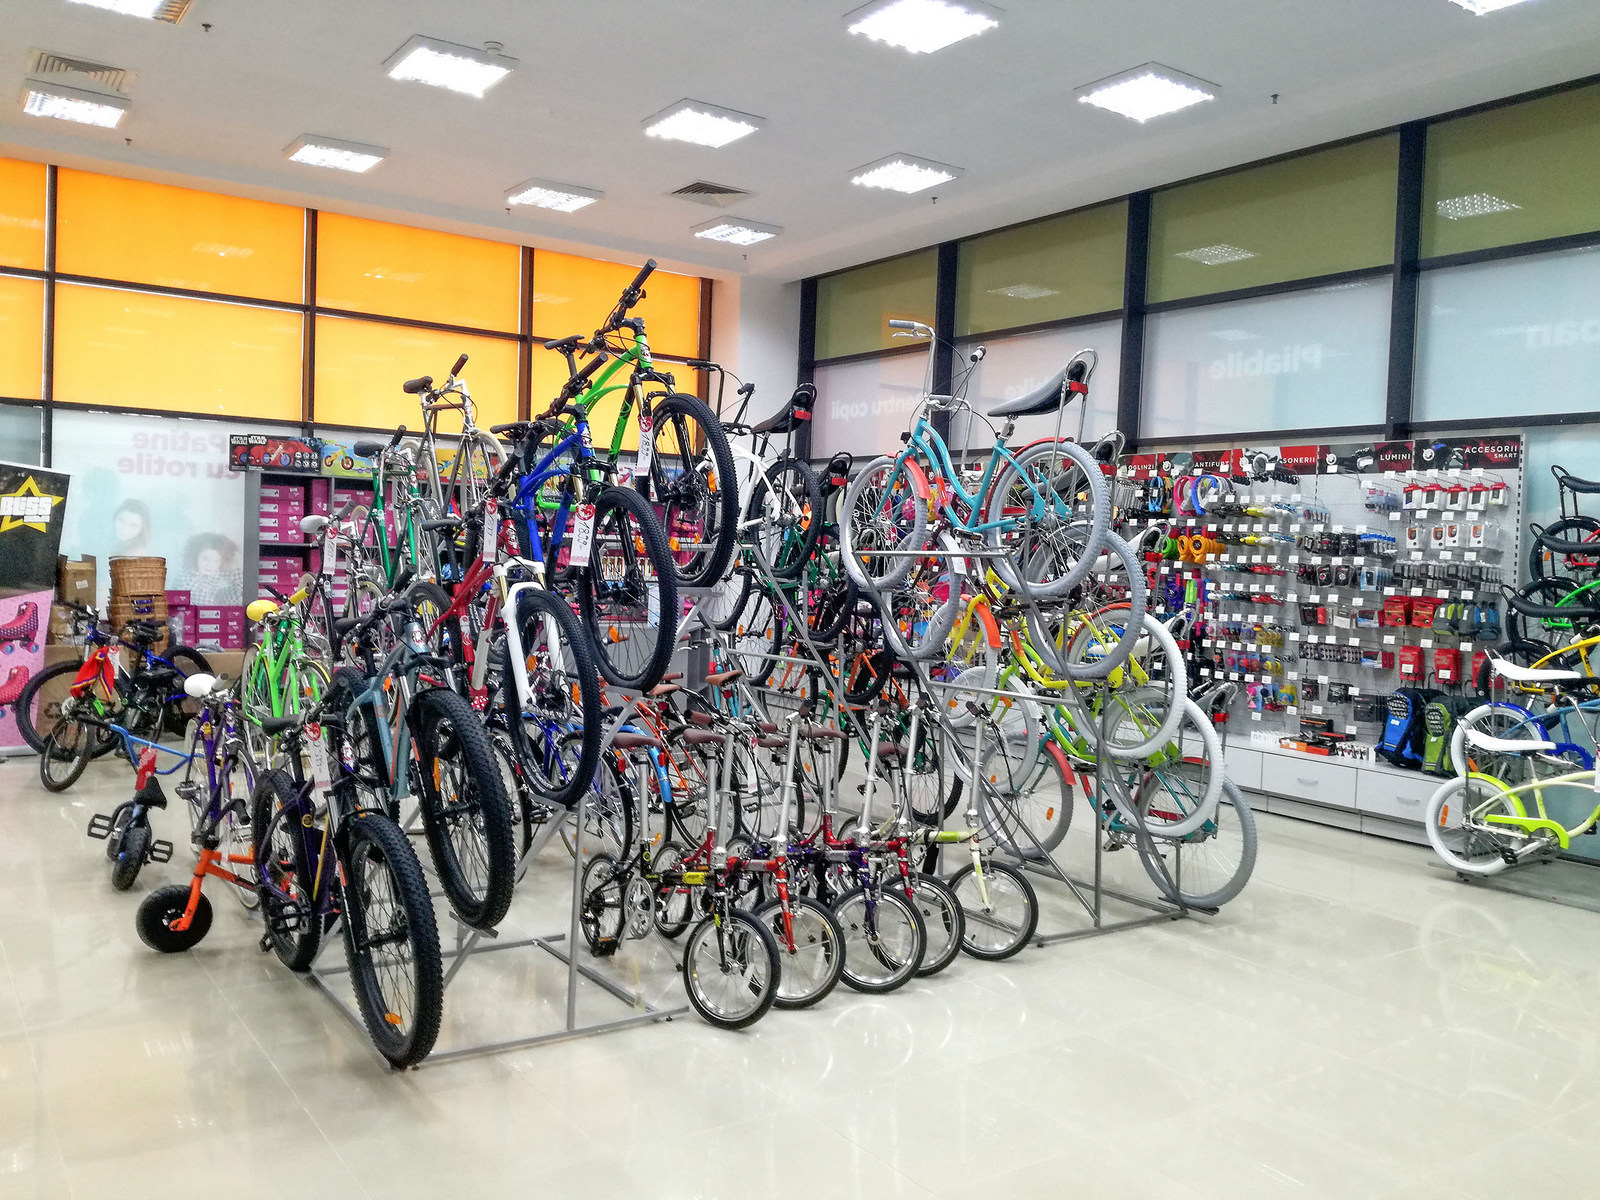 Dust Bank tennis Producătorul de biciclete Pegas a inaugurat un magazin în Suceava |  PROFIT.ro